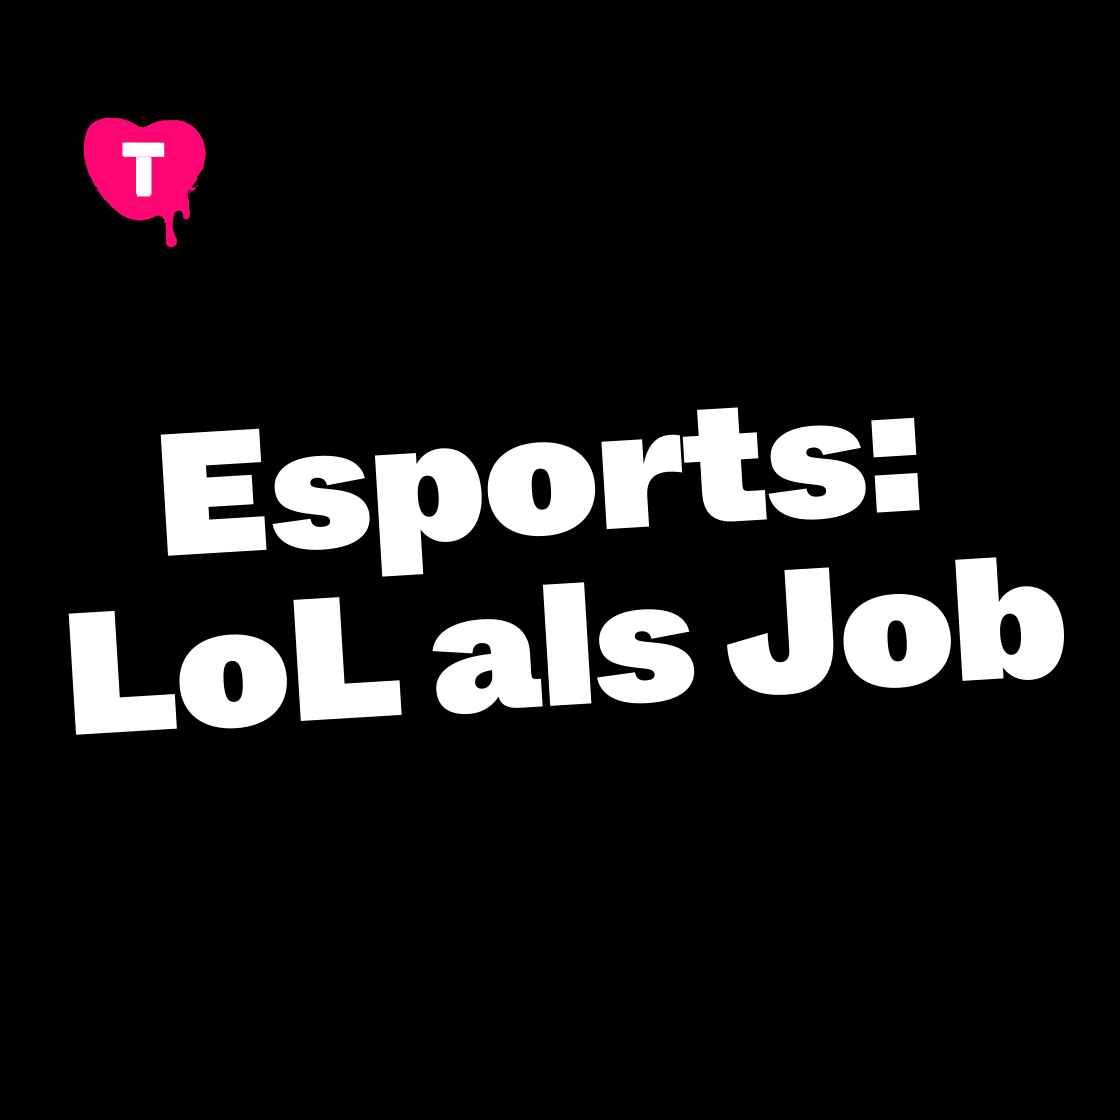 Esports: LoL als Job